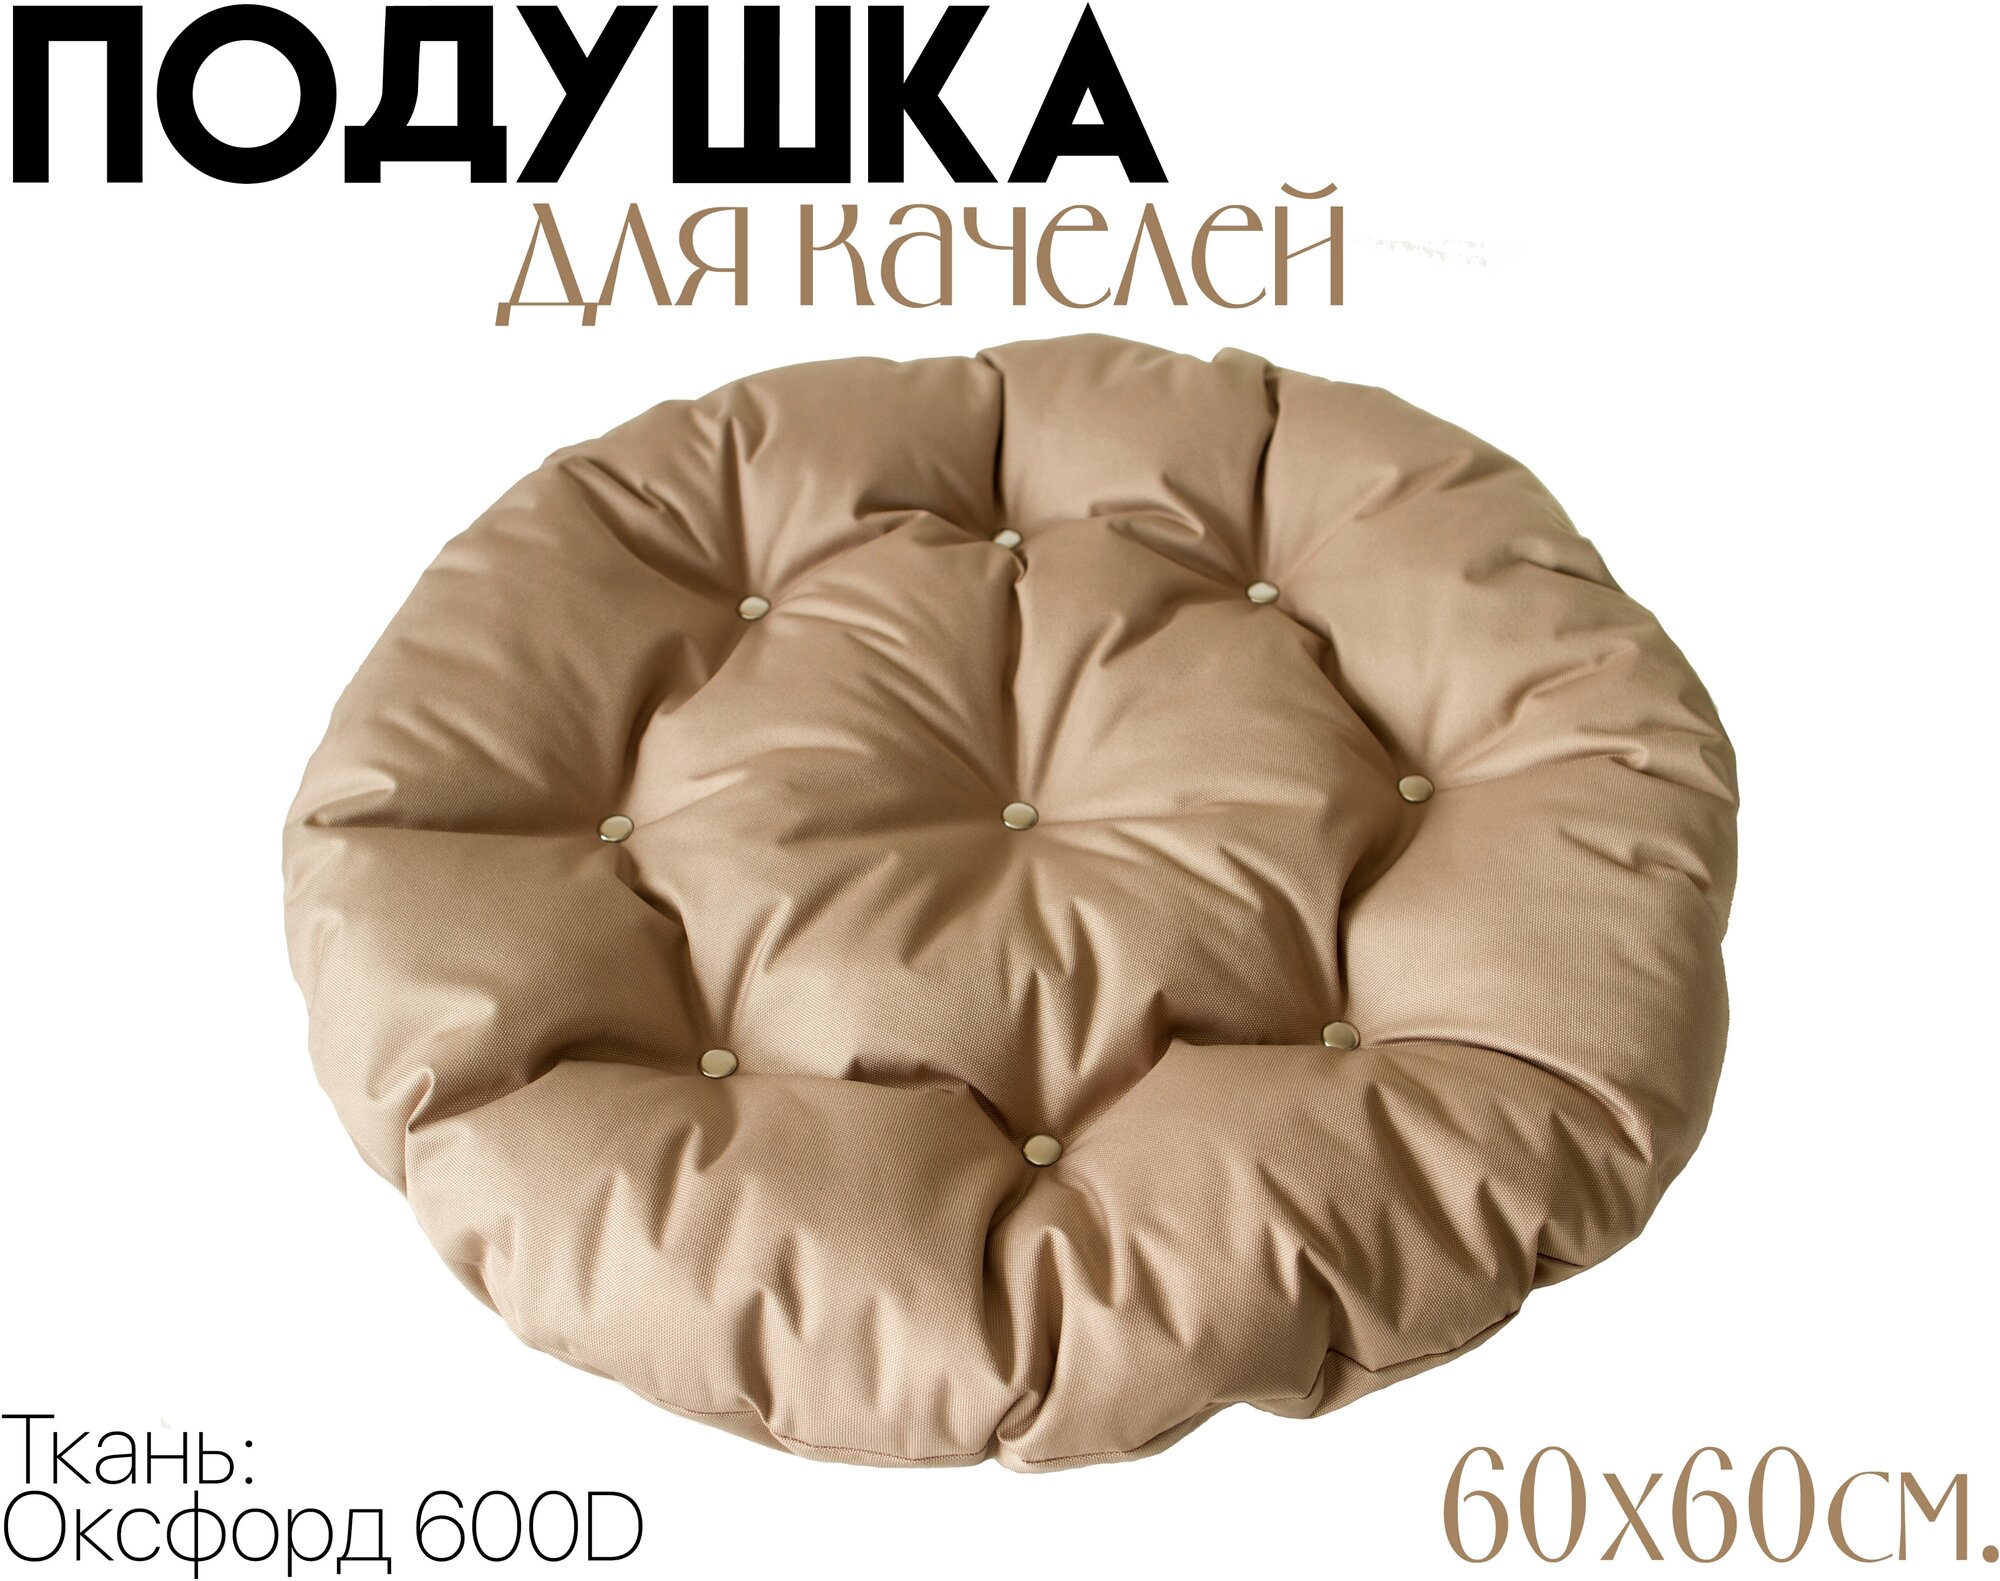 Подушка для садовой качели 60x60 см, цвет Кофе с молоком